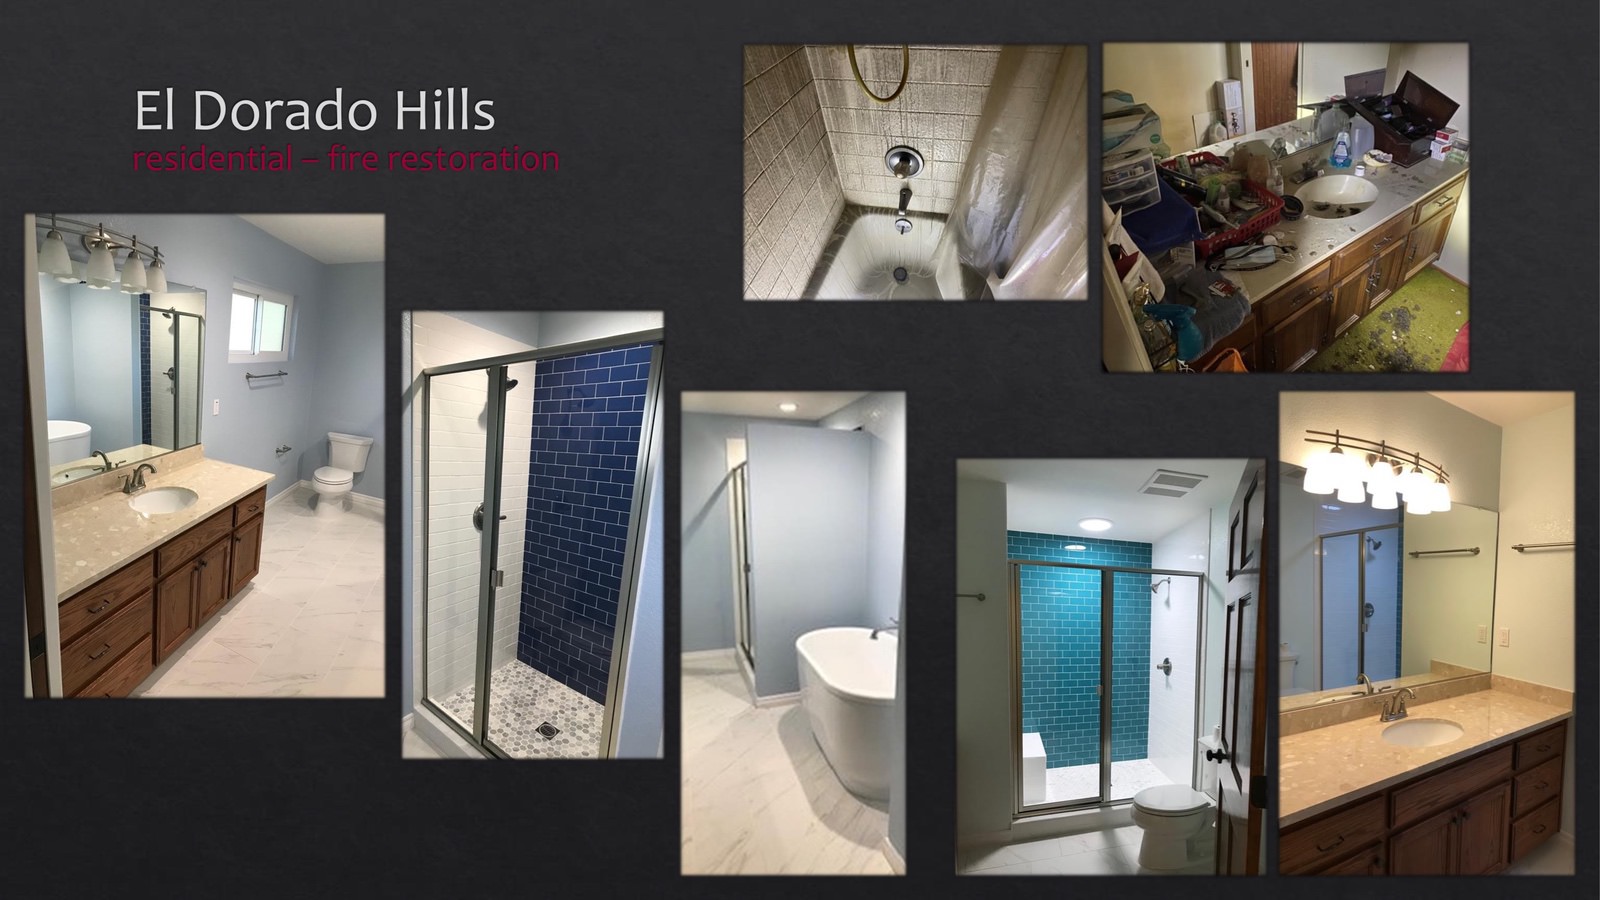 El Dorado Hills Residential fire restoration - bathroom - lightbox